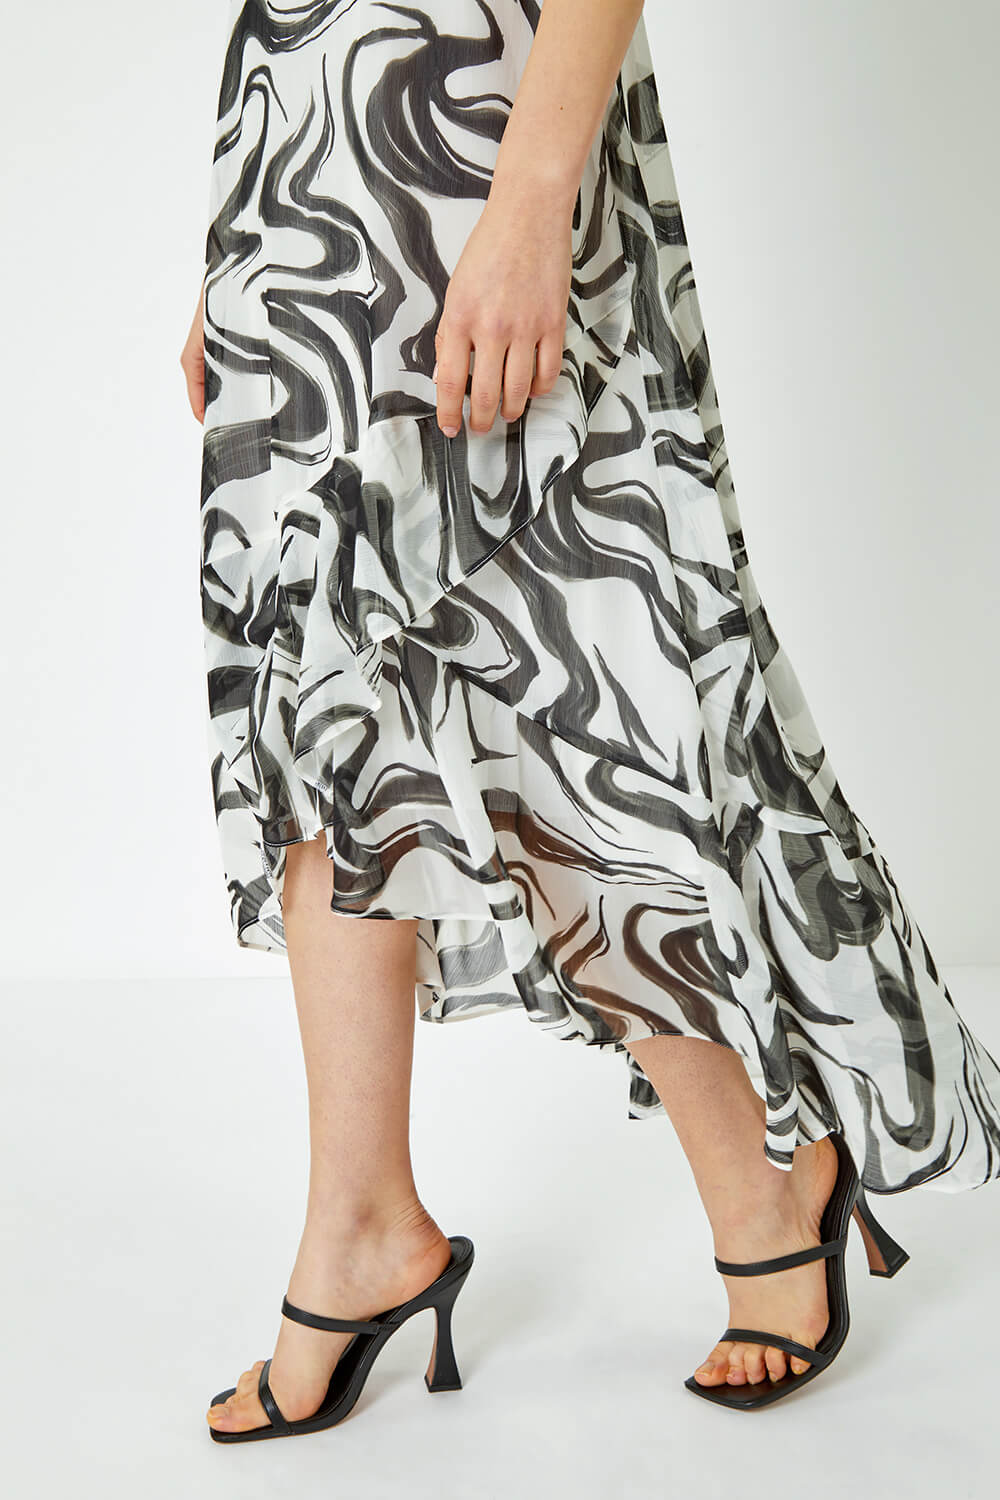 Ivory  Swirl Print Chiffon Midi Dress, Image 5 of 5